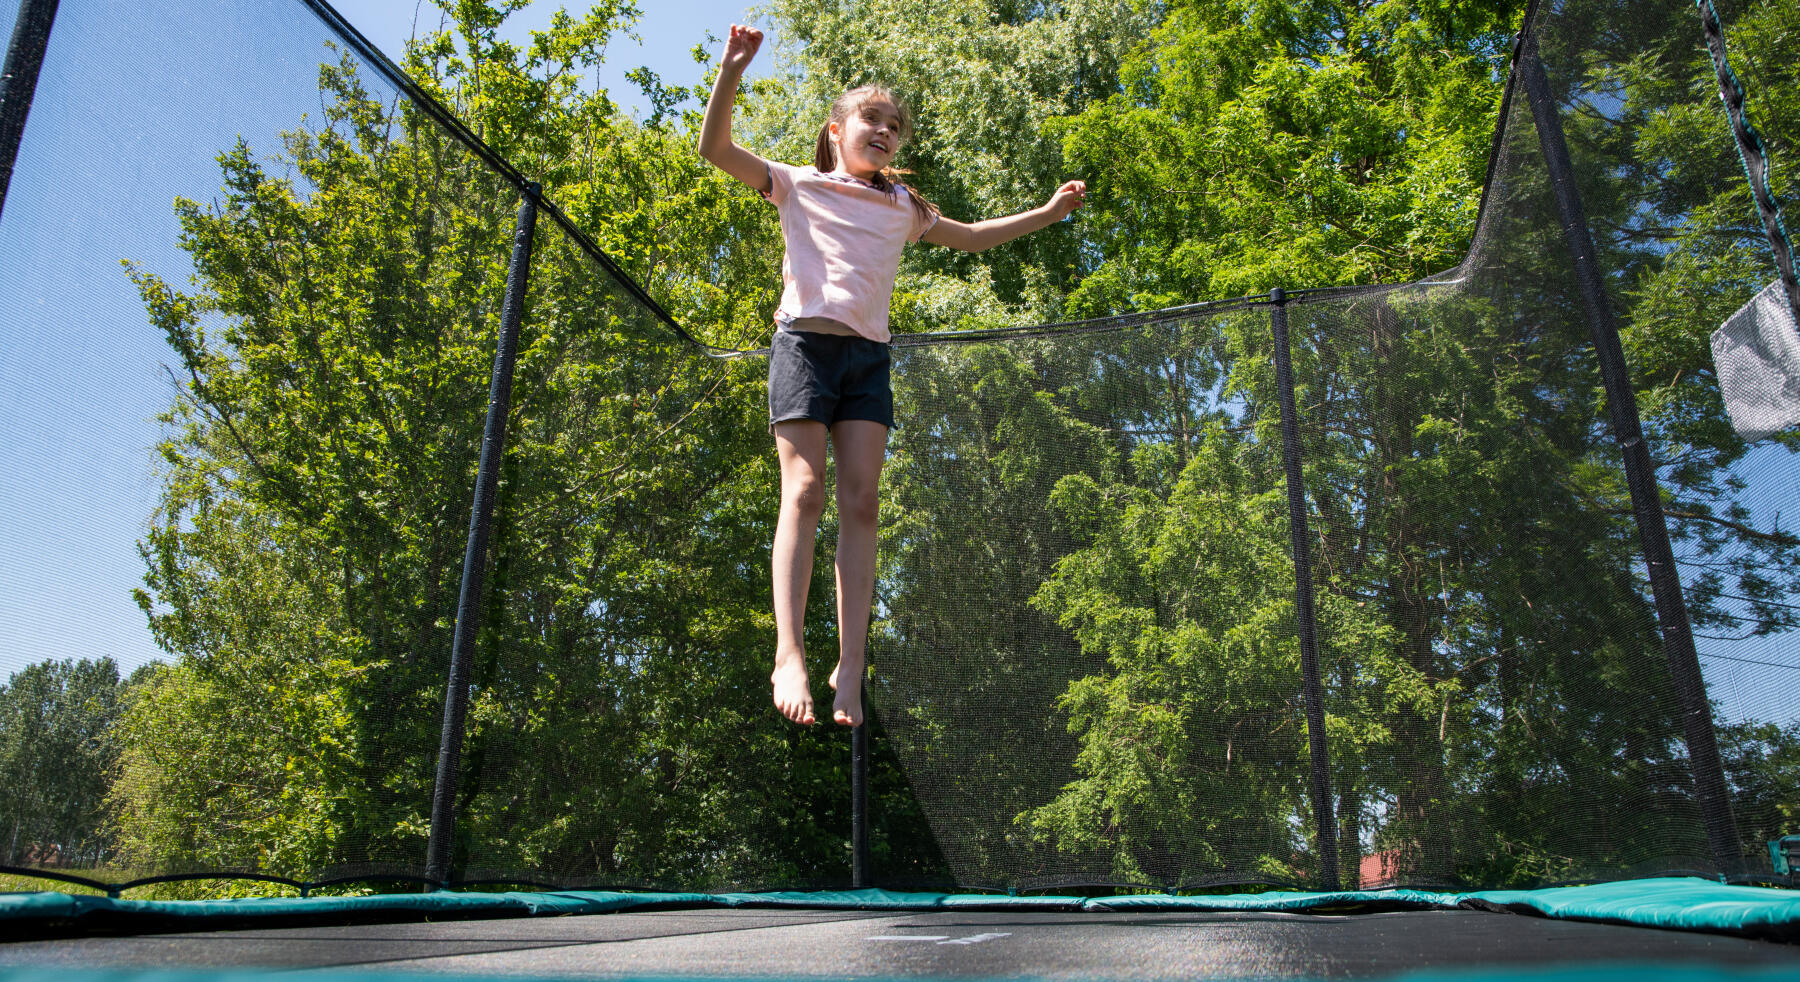 Jeux de trampolines : Nos idées pour s'amuser en toute sécurité